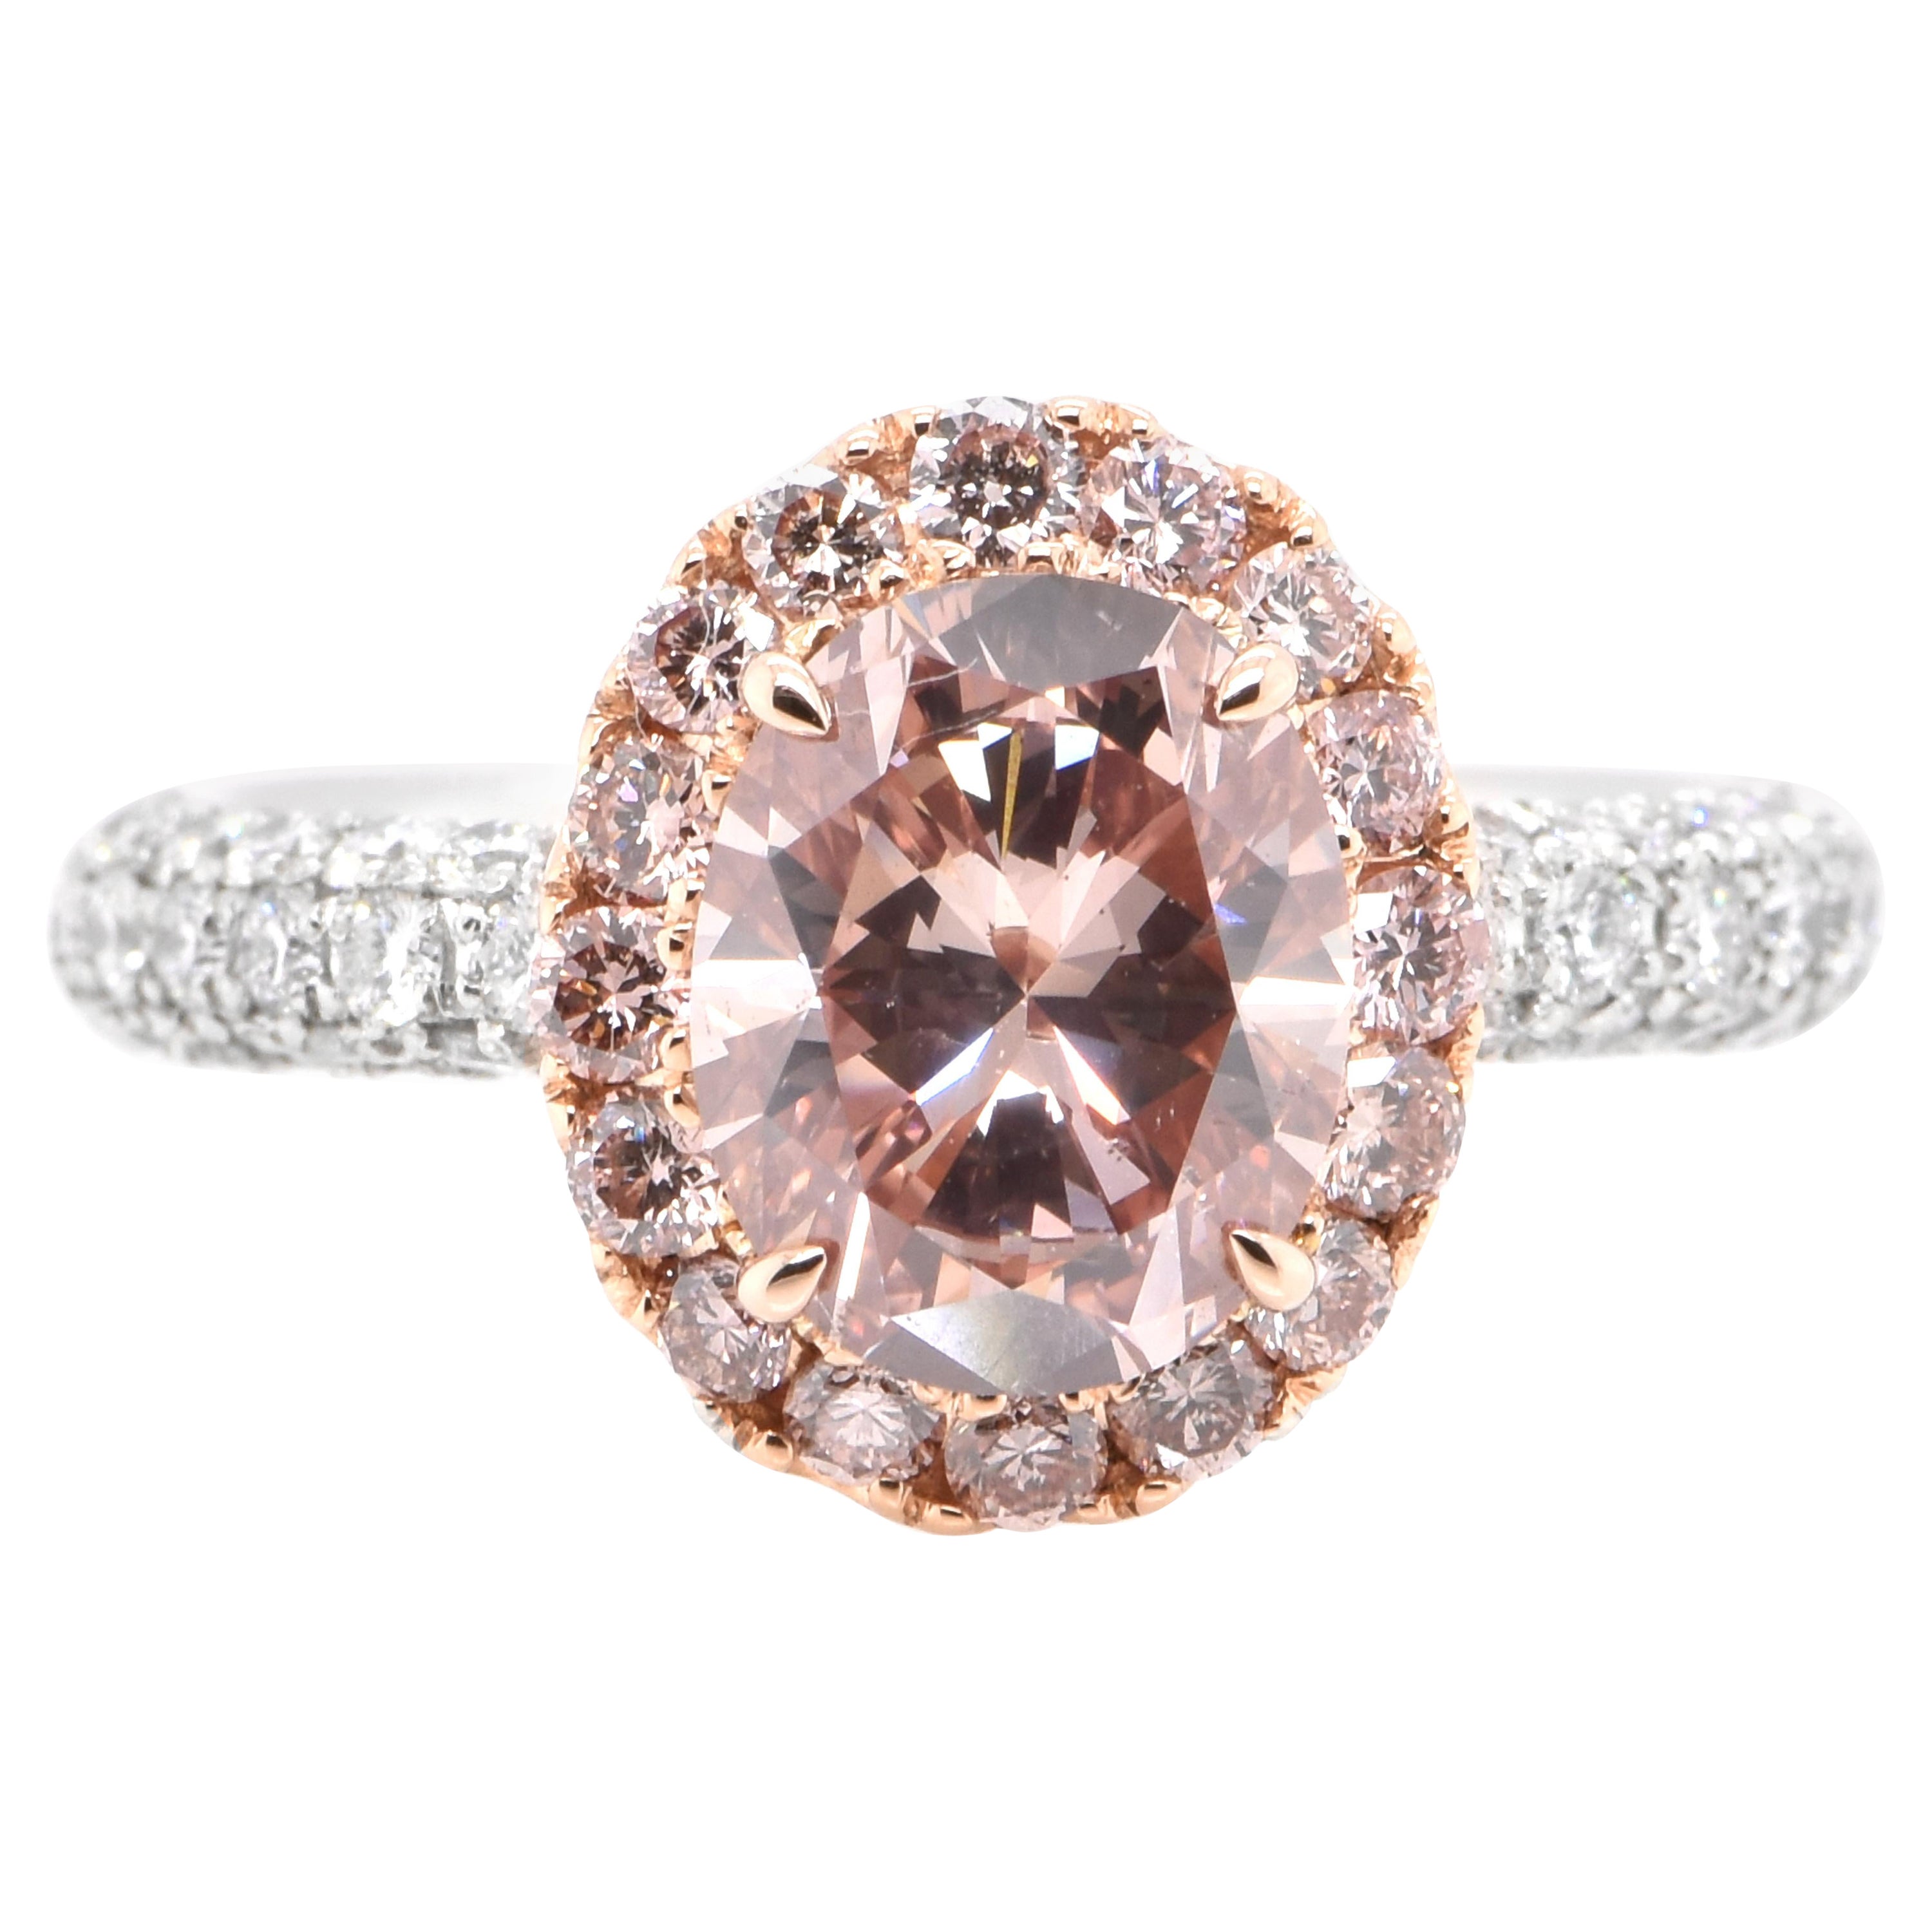 Bague en diamant certifié CGL de 2,24 carats, SI-2, de couleur naturelle rose orangé foncé